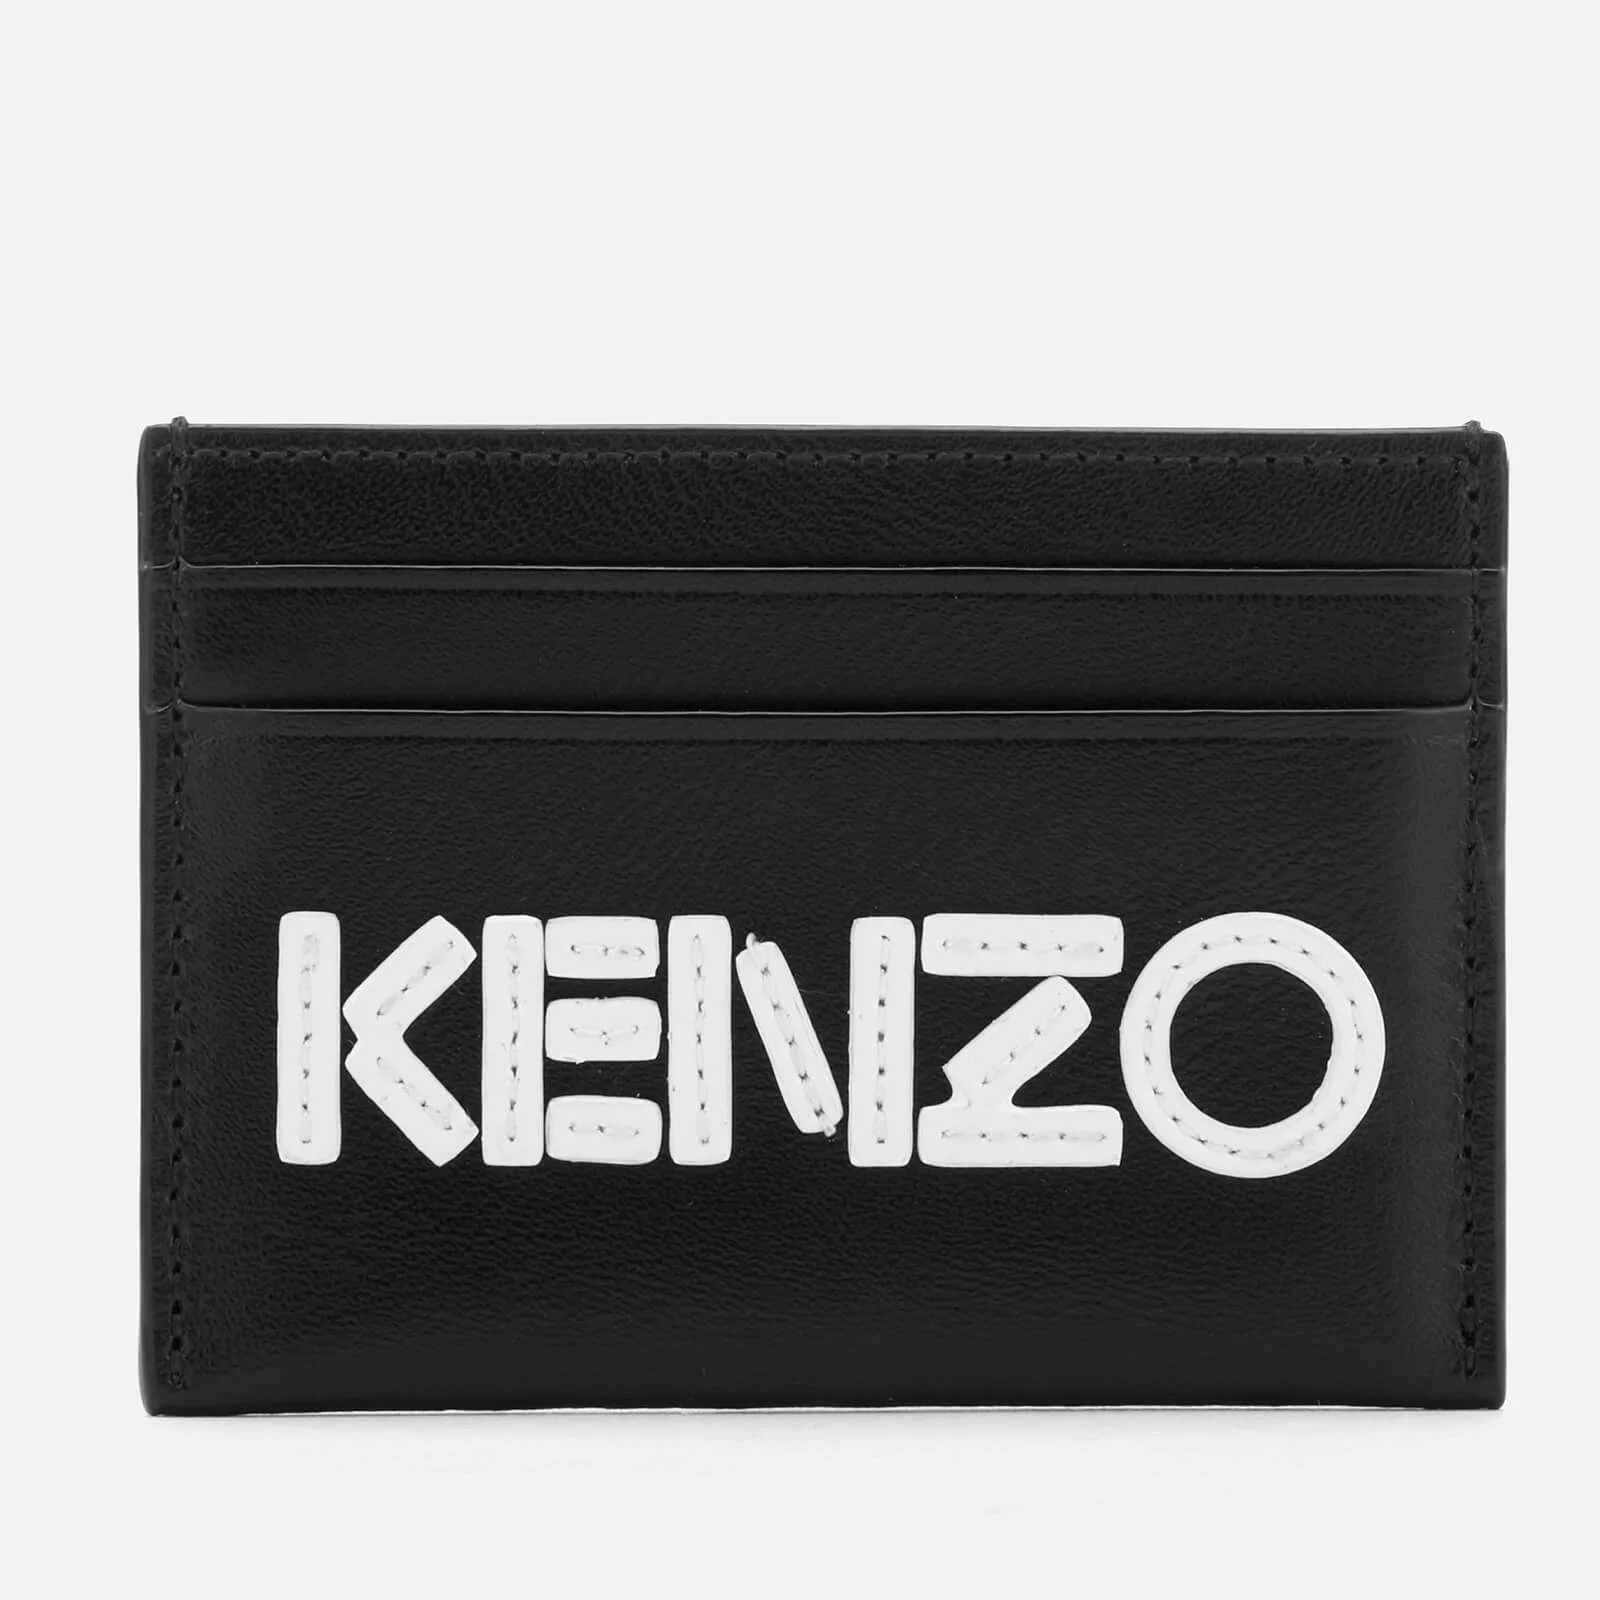 KENZO Women's Card Holder - Black Image 1